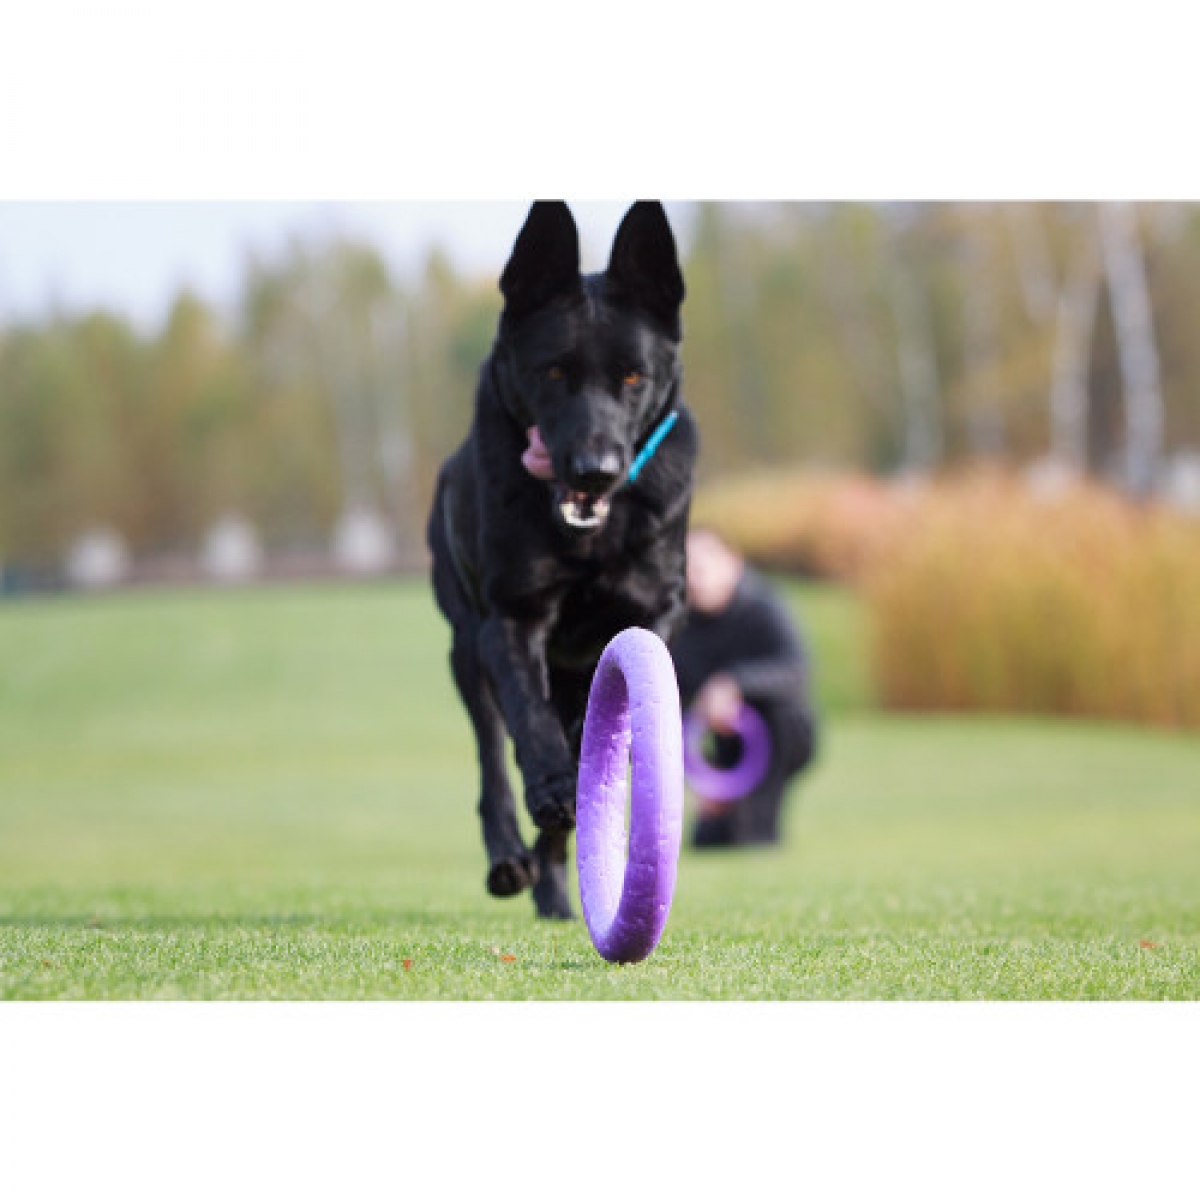 PULLER Standard  Ø28 cm - atrybut treningowy dla średnich i dużych ras psów